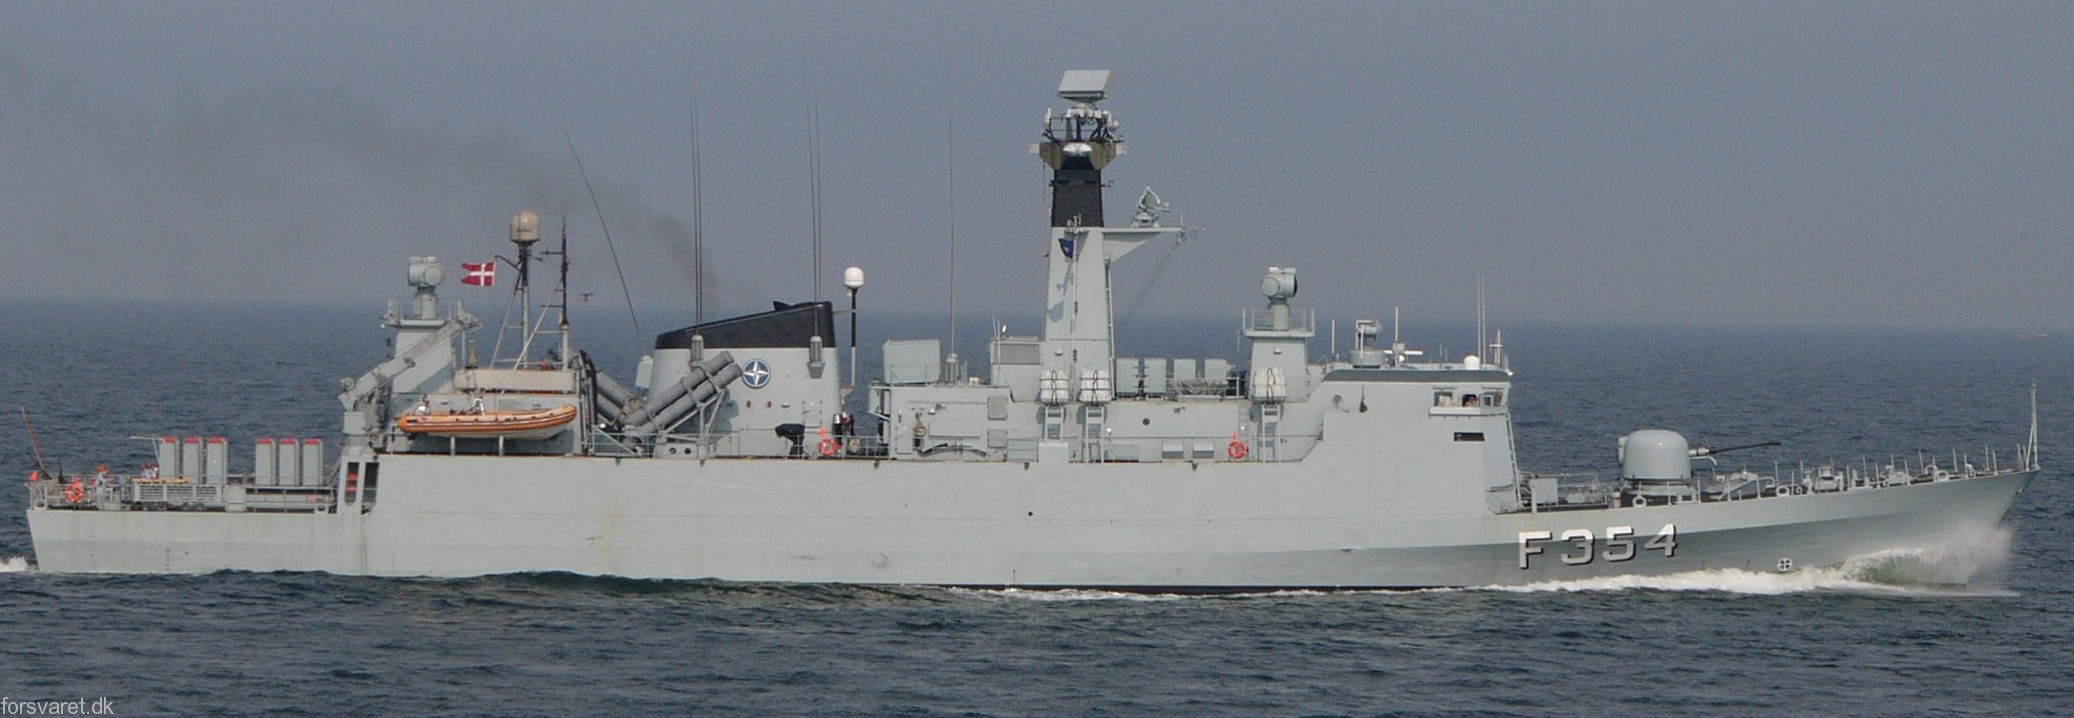 f-354 hdms niels juel class corvette royal danish navy kongelige danske marine kdm 79